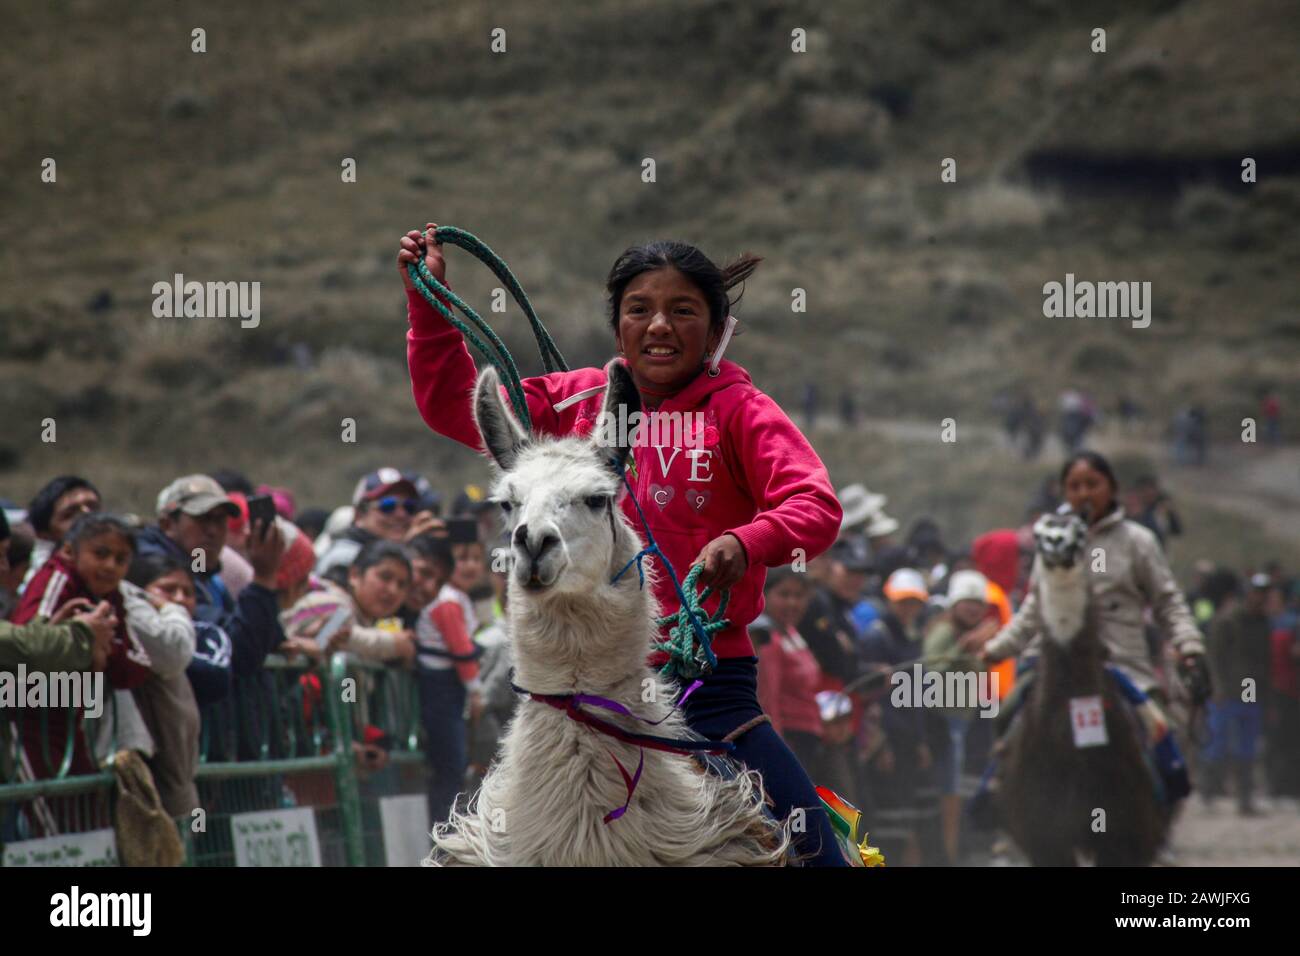 Dpatop - 08 février 2020, Equateur, Quito: Participant Irma Santafe conduit son llama et prend la troisième place dans la course traditionnelle de llama dans le parc national de Llanganates dans la province de Tungurahua à 4100 mètres d'altitude. Photo: Juan Diego Monténégro/ Banque D'Images